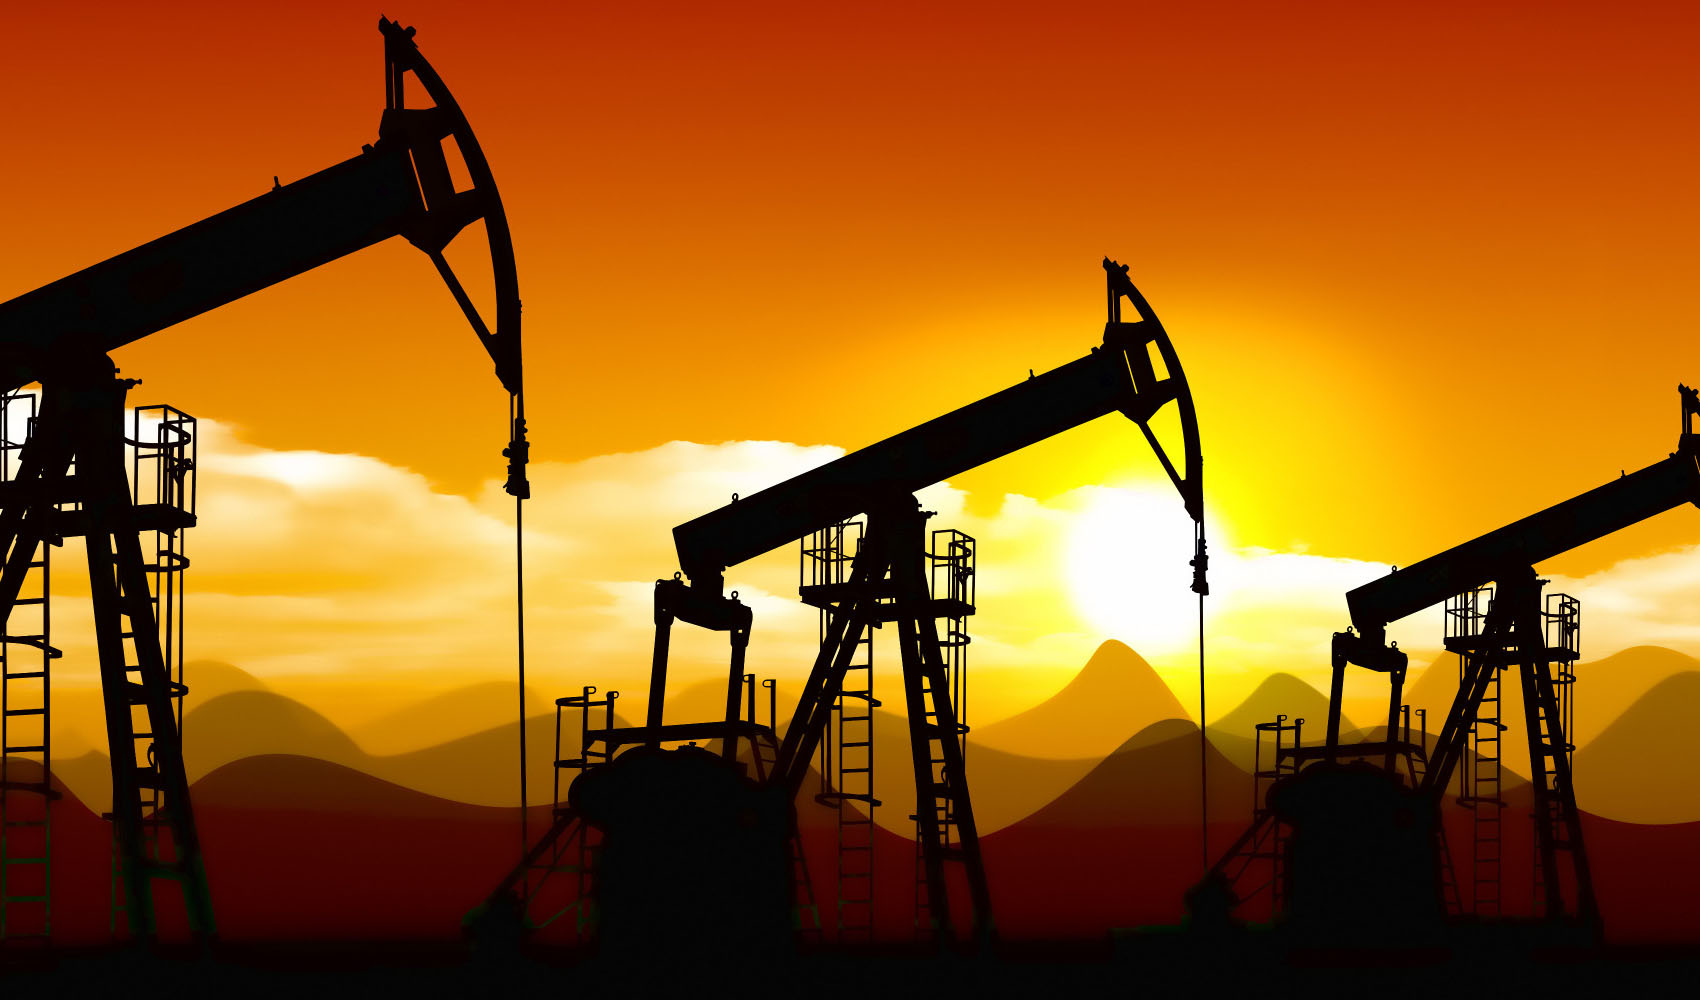 روسیه در اوج تحریم ۴.۶ میلیون بشکه نفت صادر می کند